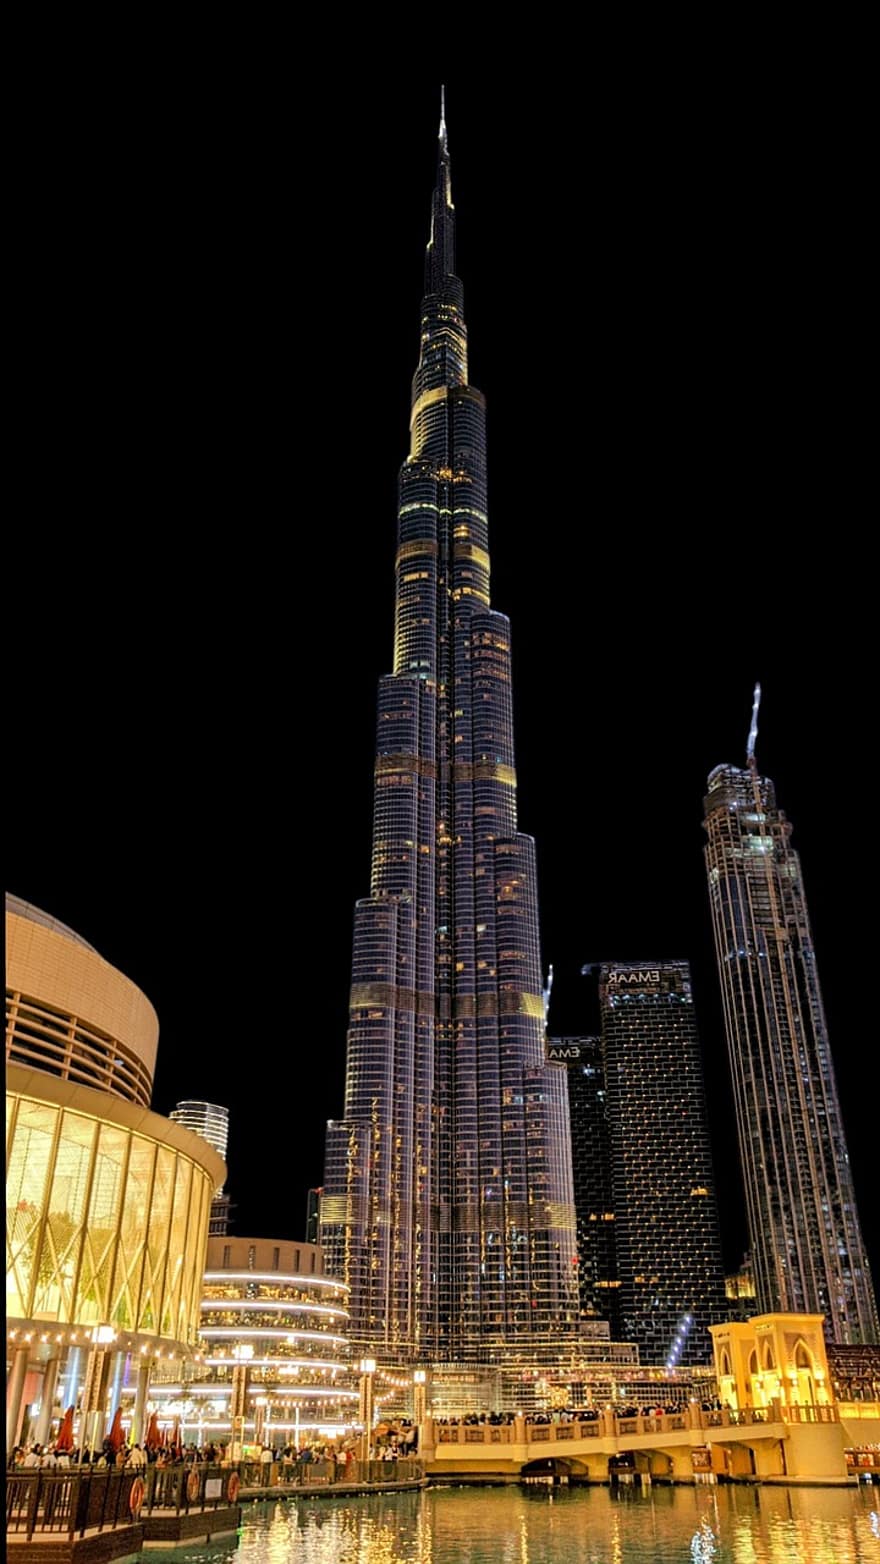 Burj Khalifa, Emirates, Architecture, City, Urban, Metropolitan, Skyscrapers, night, skyscraper, famous place, cityscape